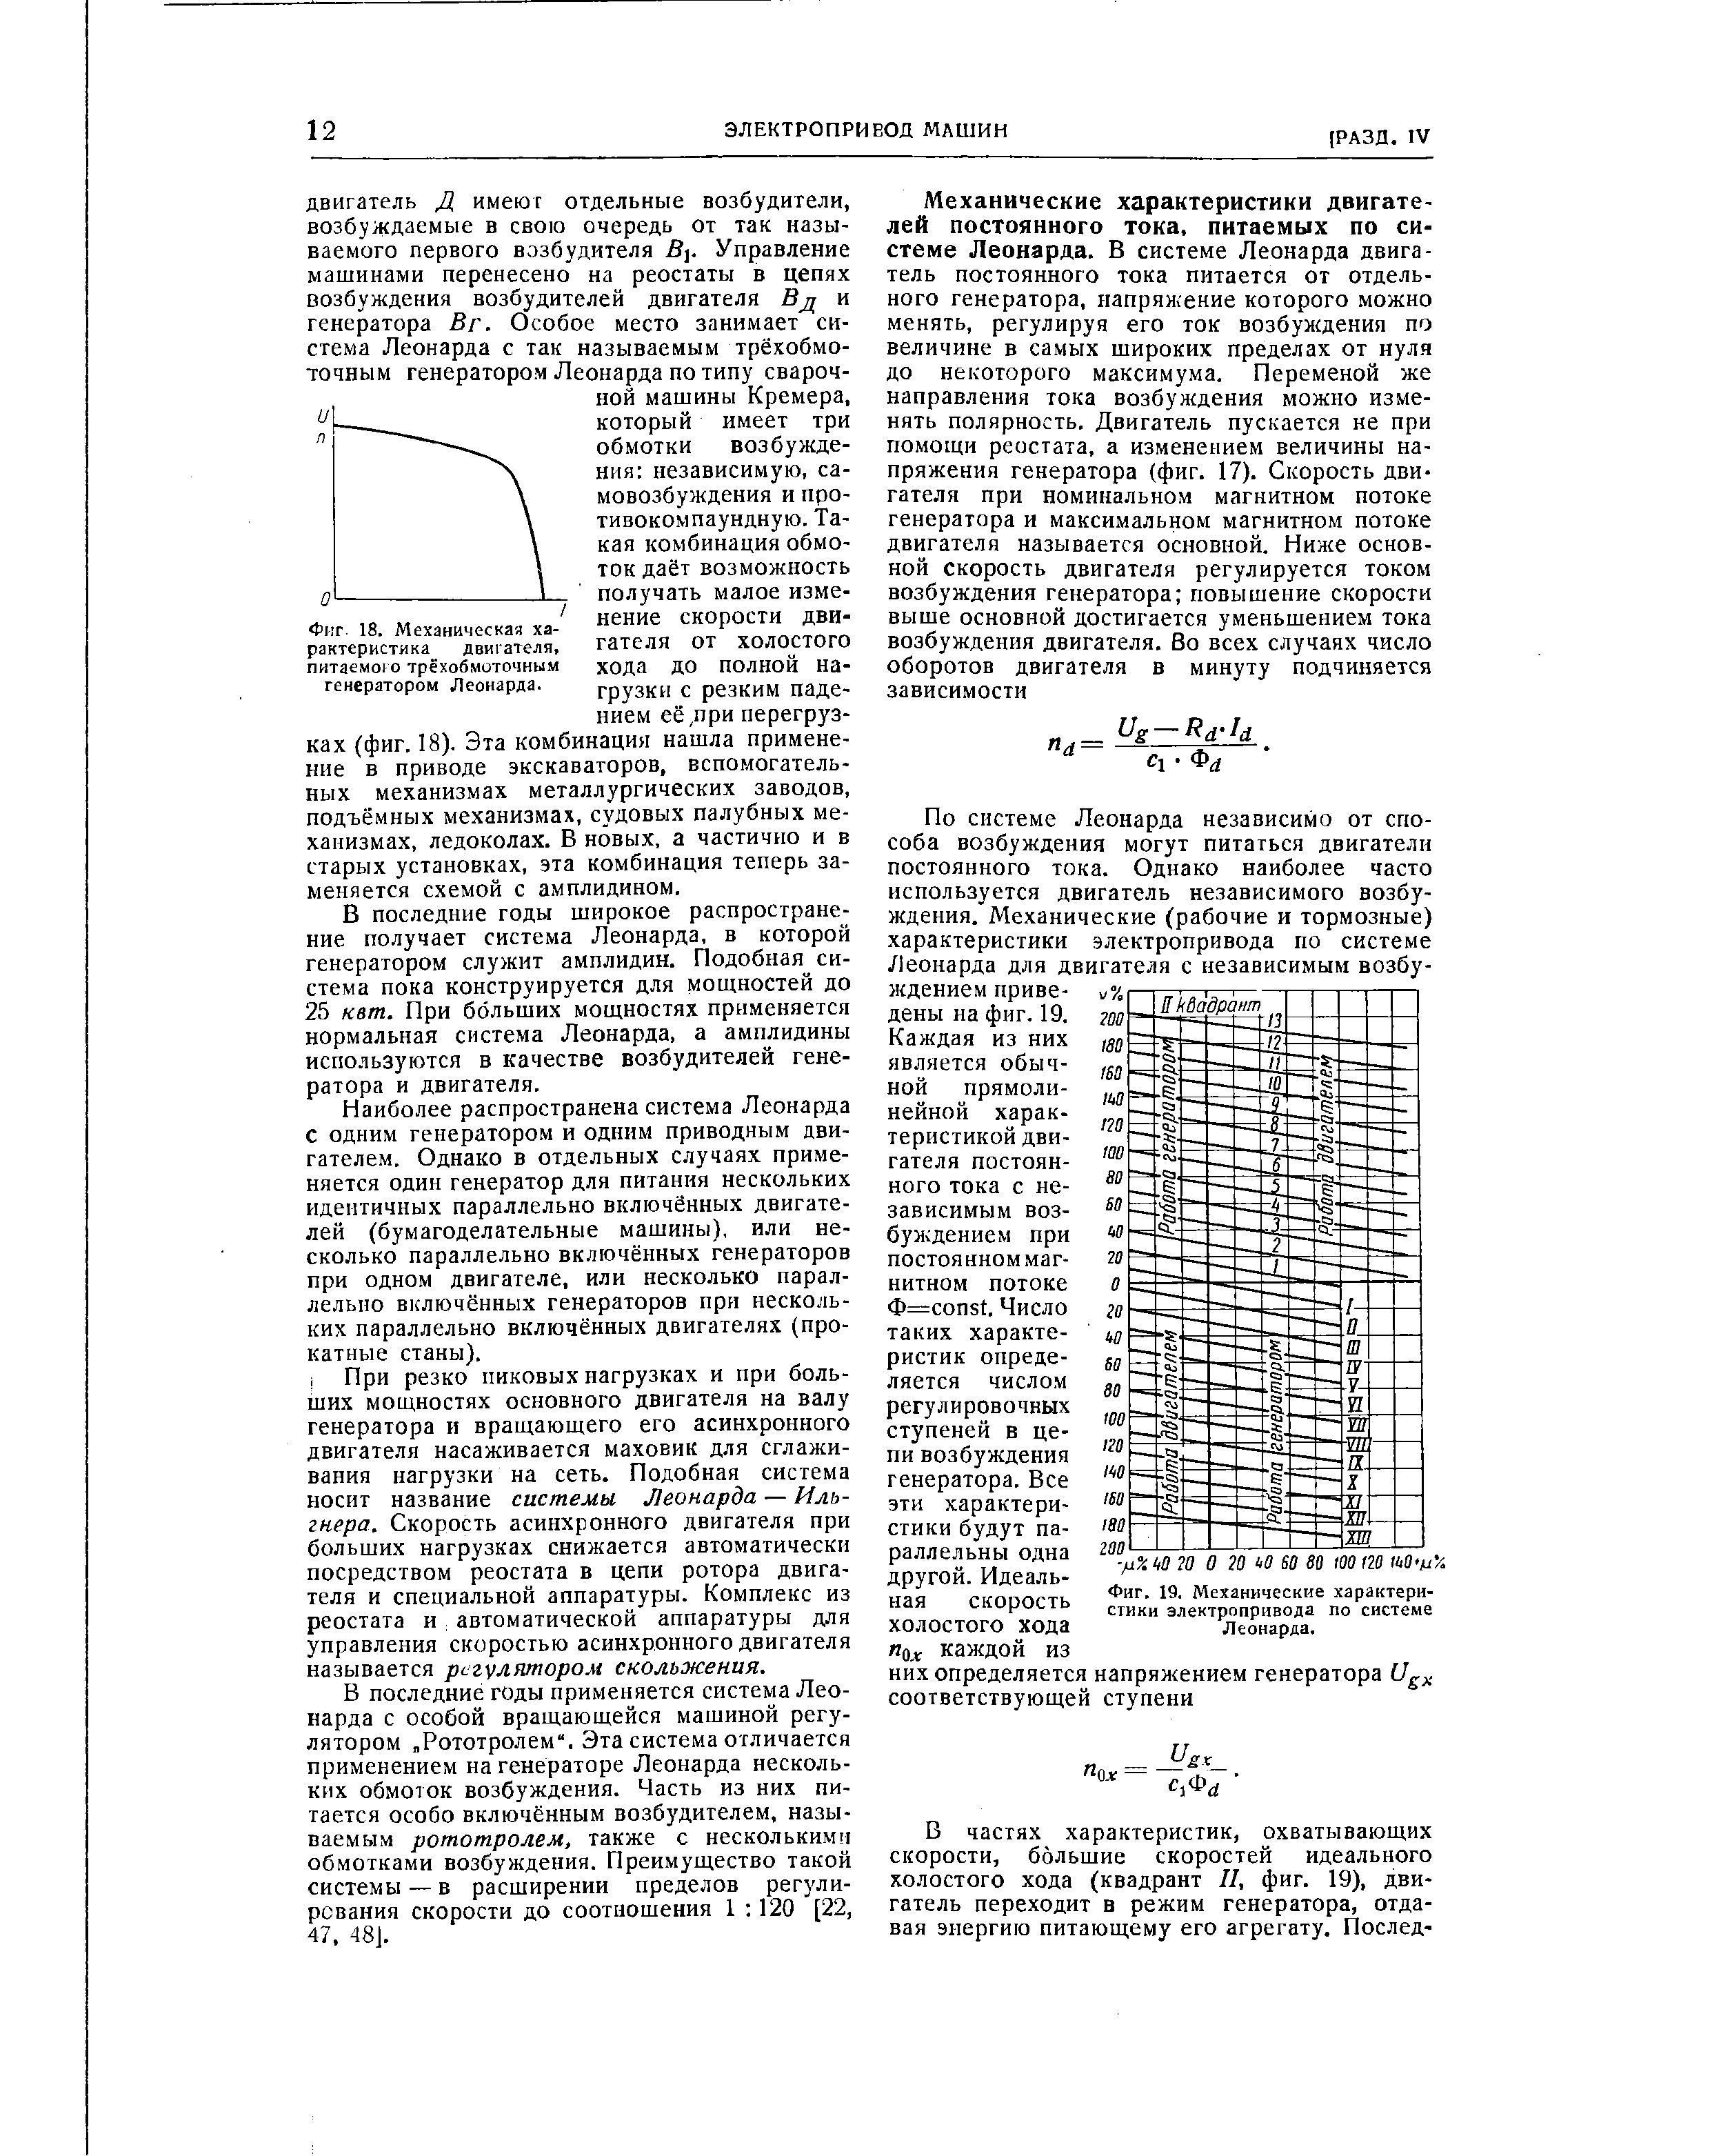 Фиг. 19. Механические характеристики электропривода по системе Леонарда.
